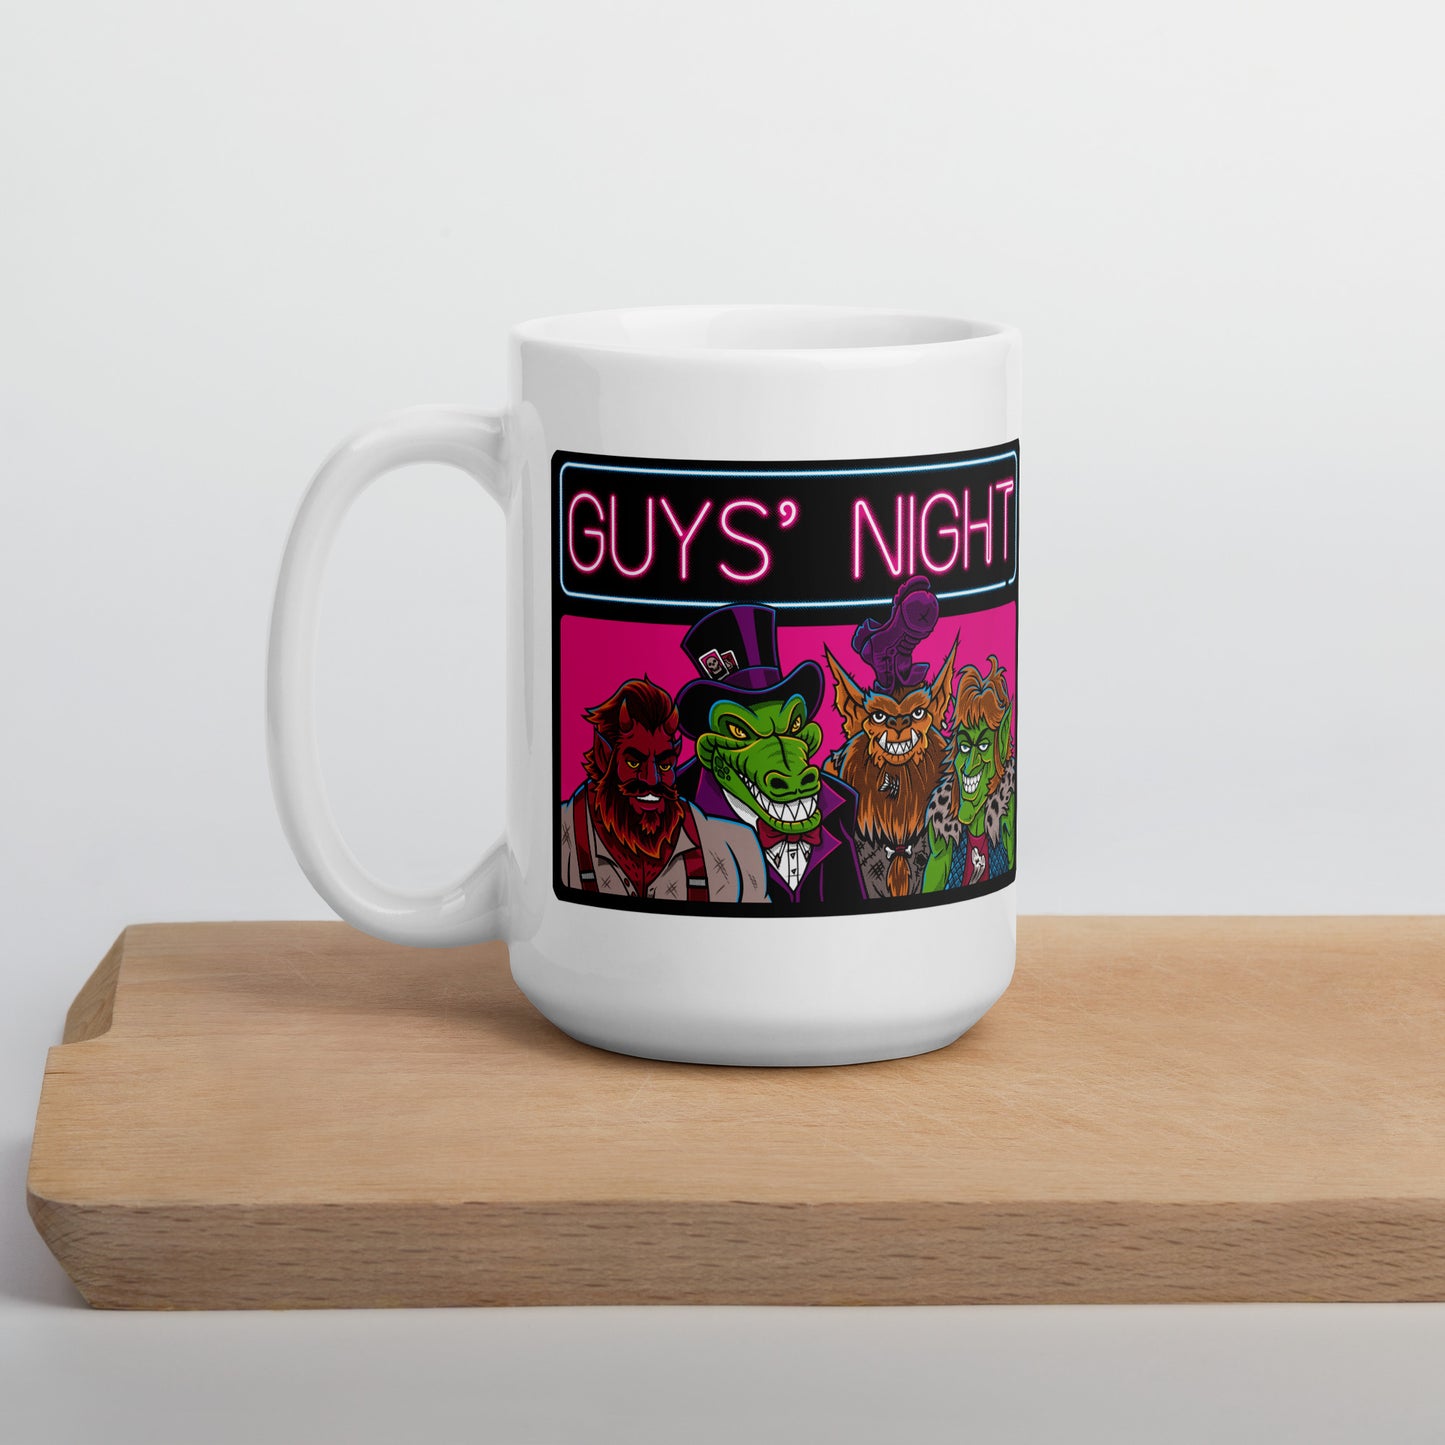 Guys' Night - White Glossy Mug